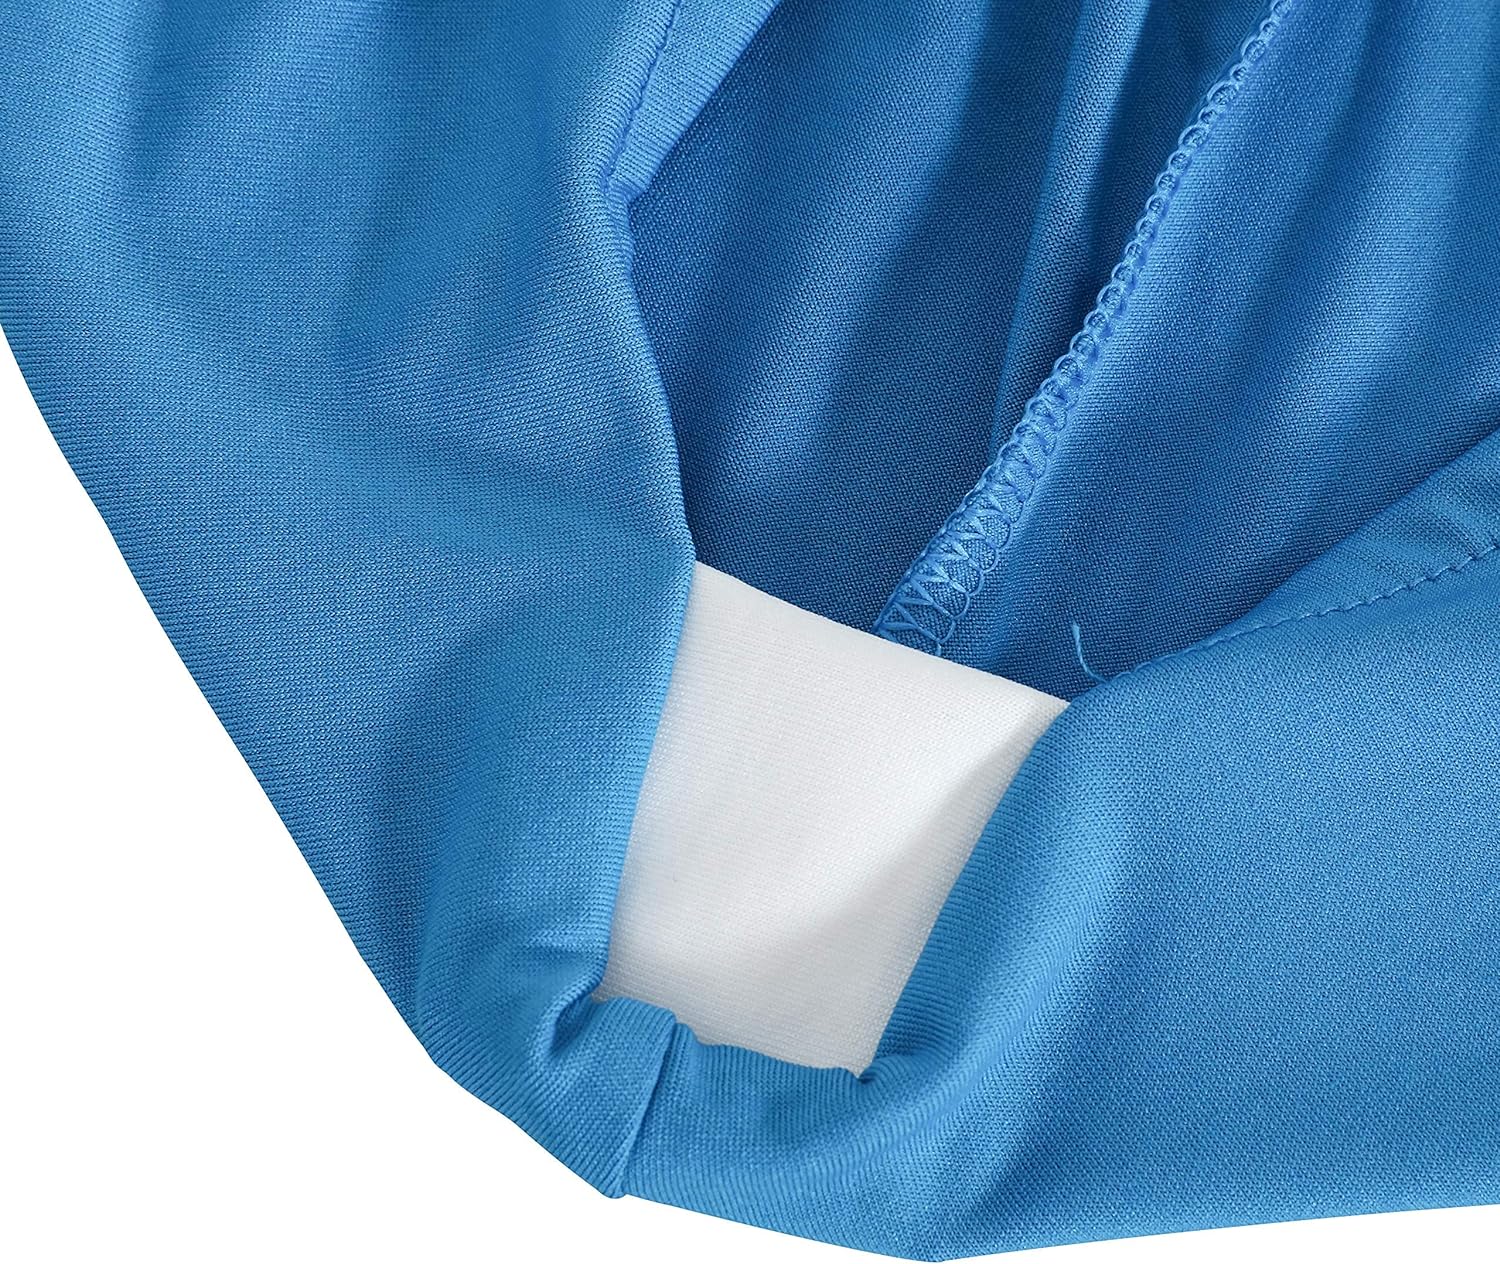 Mantel de elastano elástico de 6.0 ft para mesas plegables estándar, paquete de